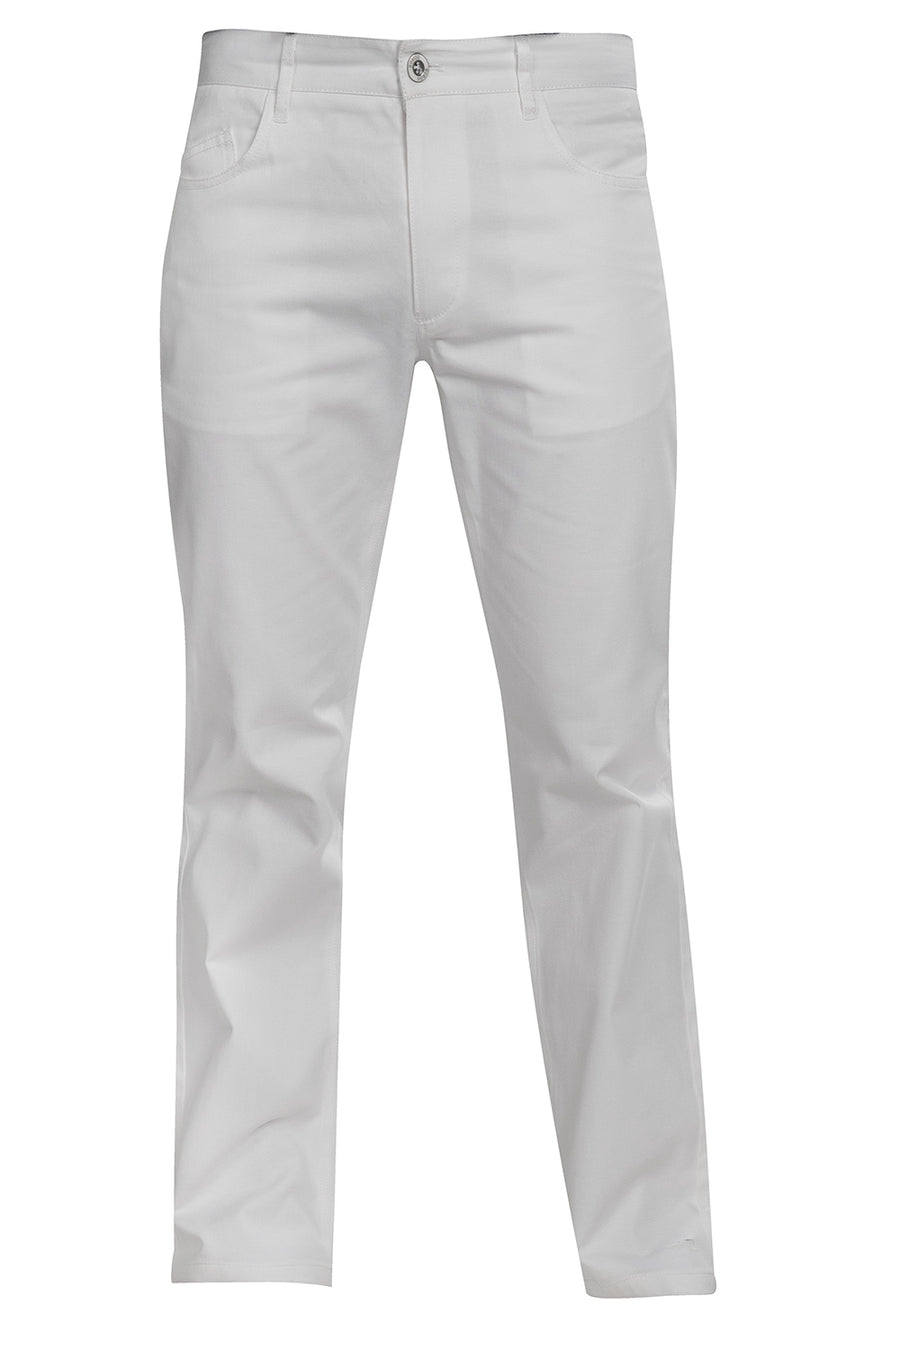 Pantalon blanco 